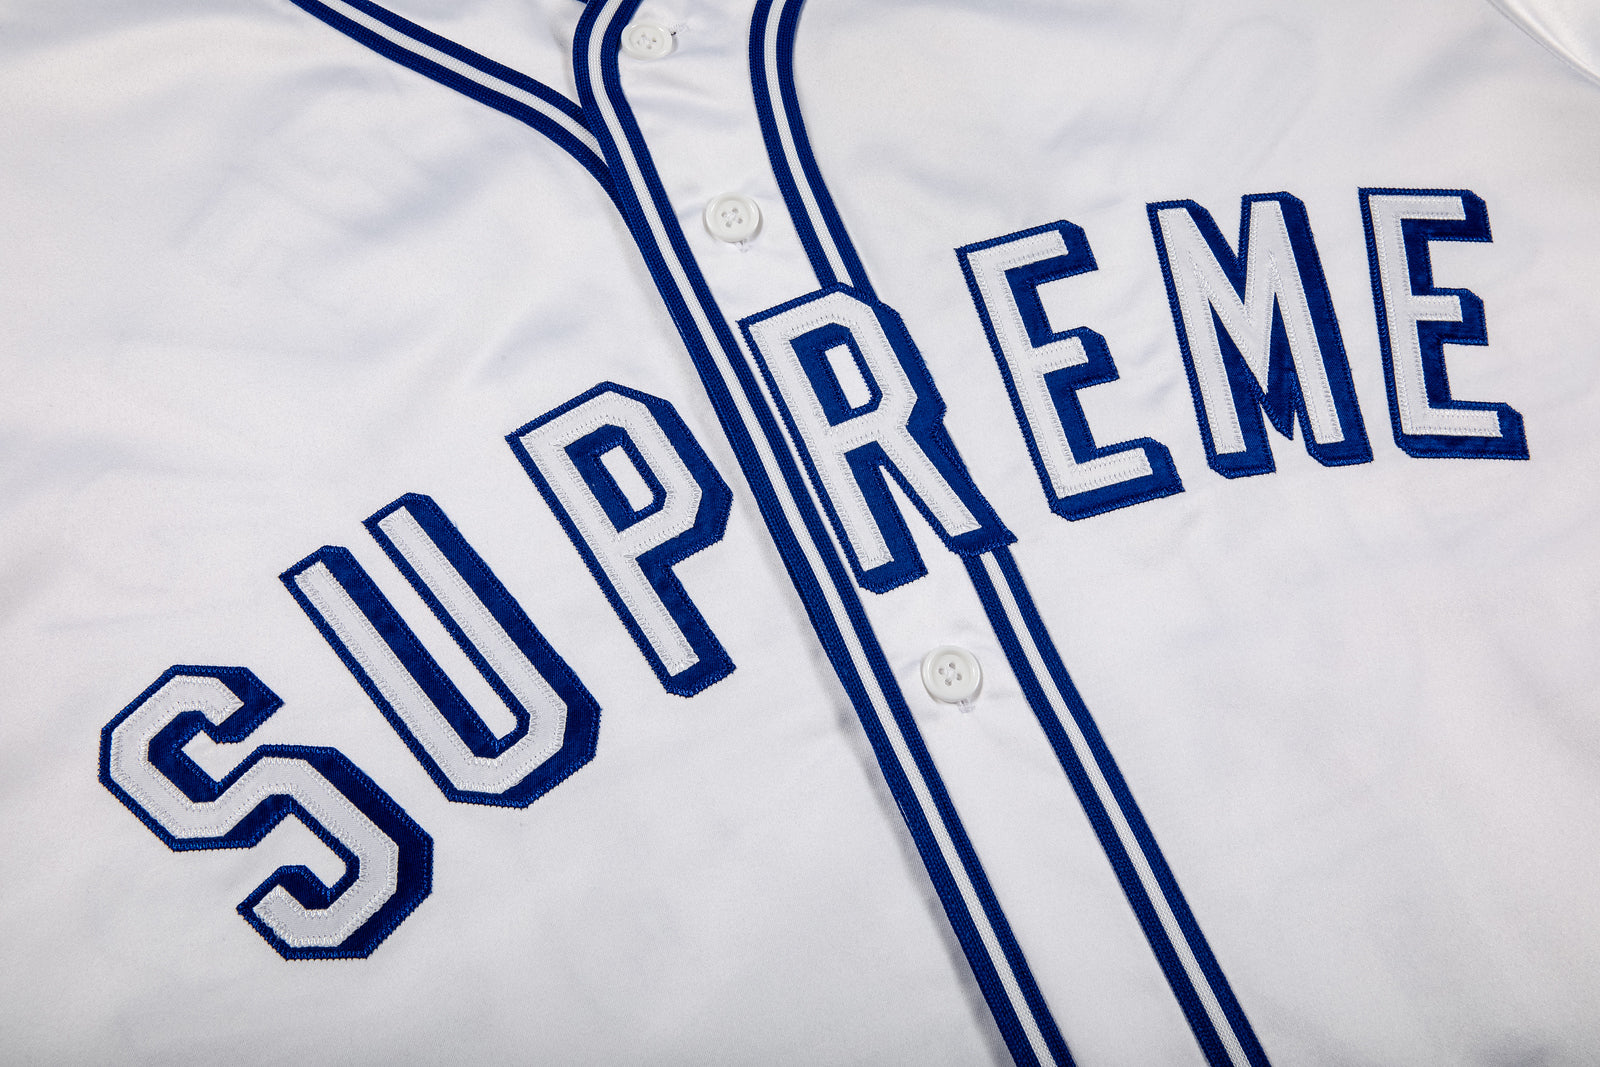 Supreme satin baseball jersey in 2023